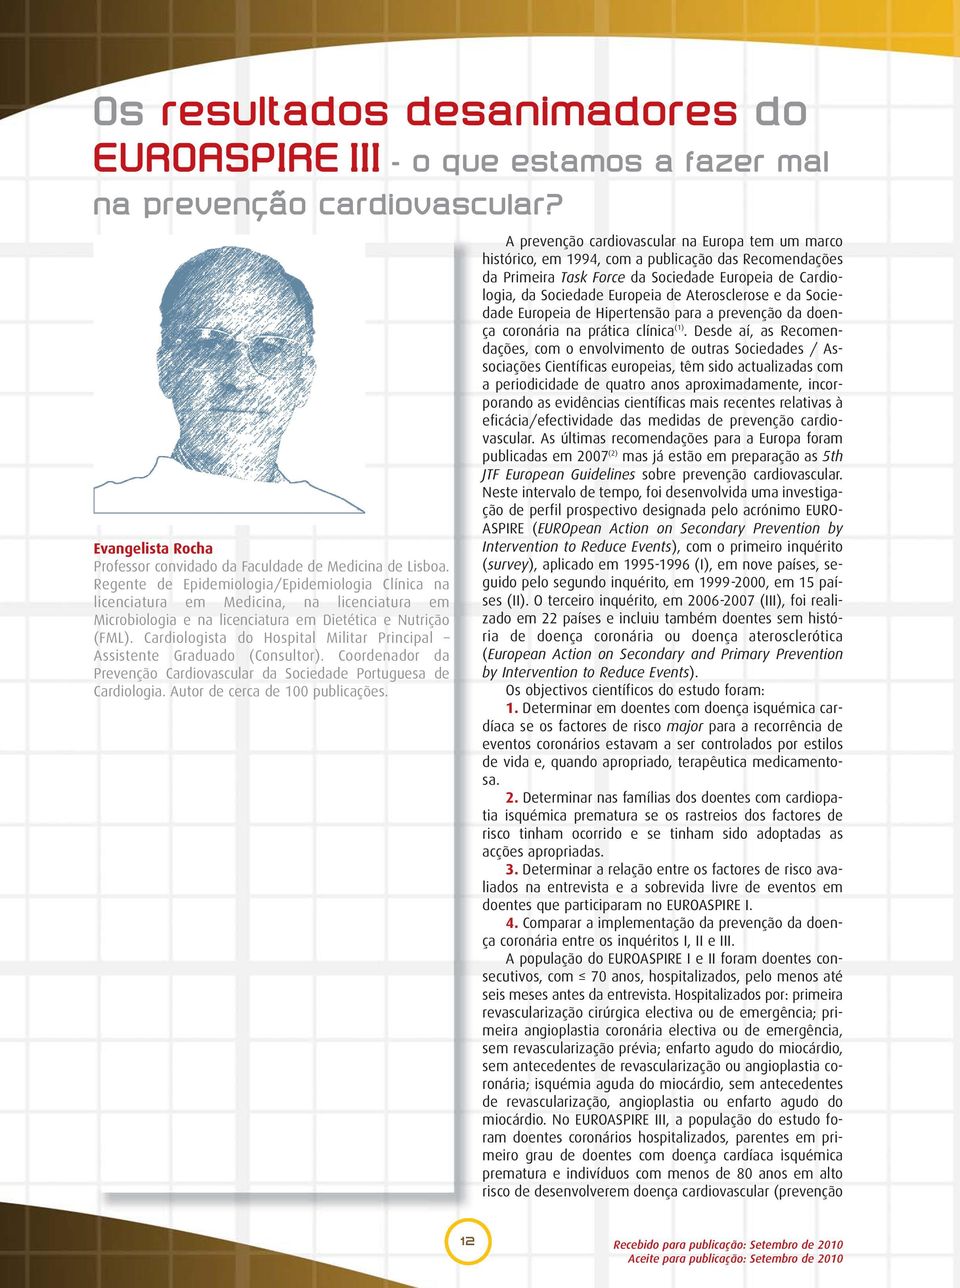 Cardiologista do Hospital Militar Principal Assistente Graduado (Consultor). Coordenador da Prevenção Cardiovascular da Sociedade Portuguesa de Cardiologia. Autor de cerca de 100 publicações.